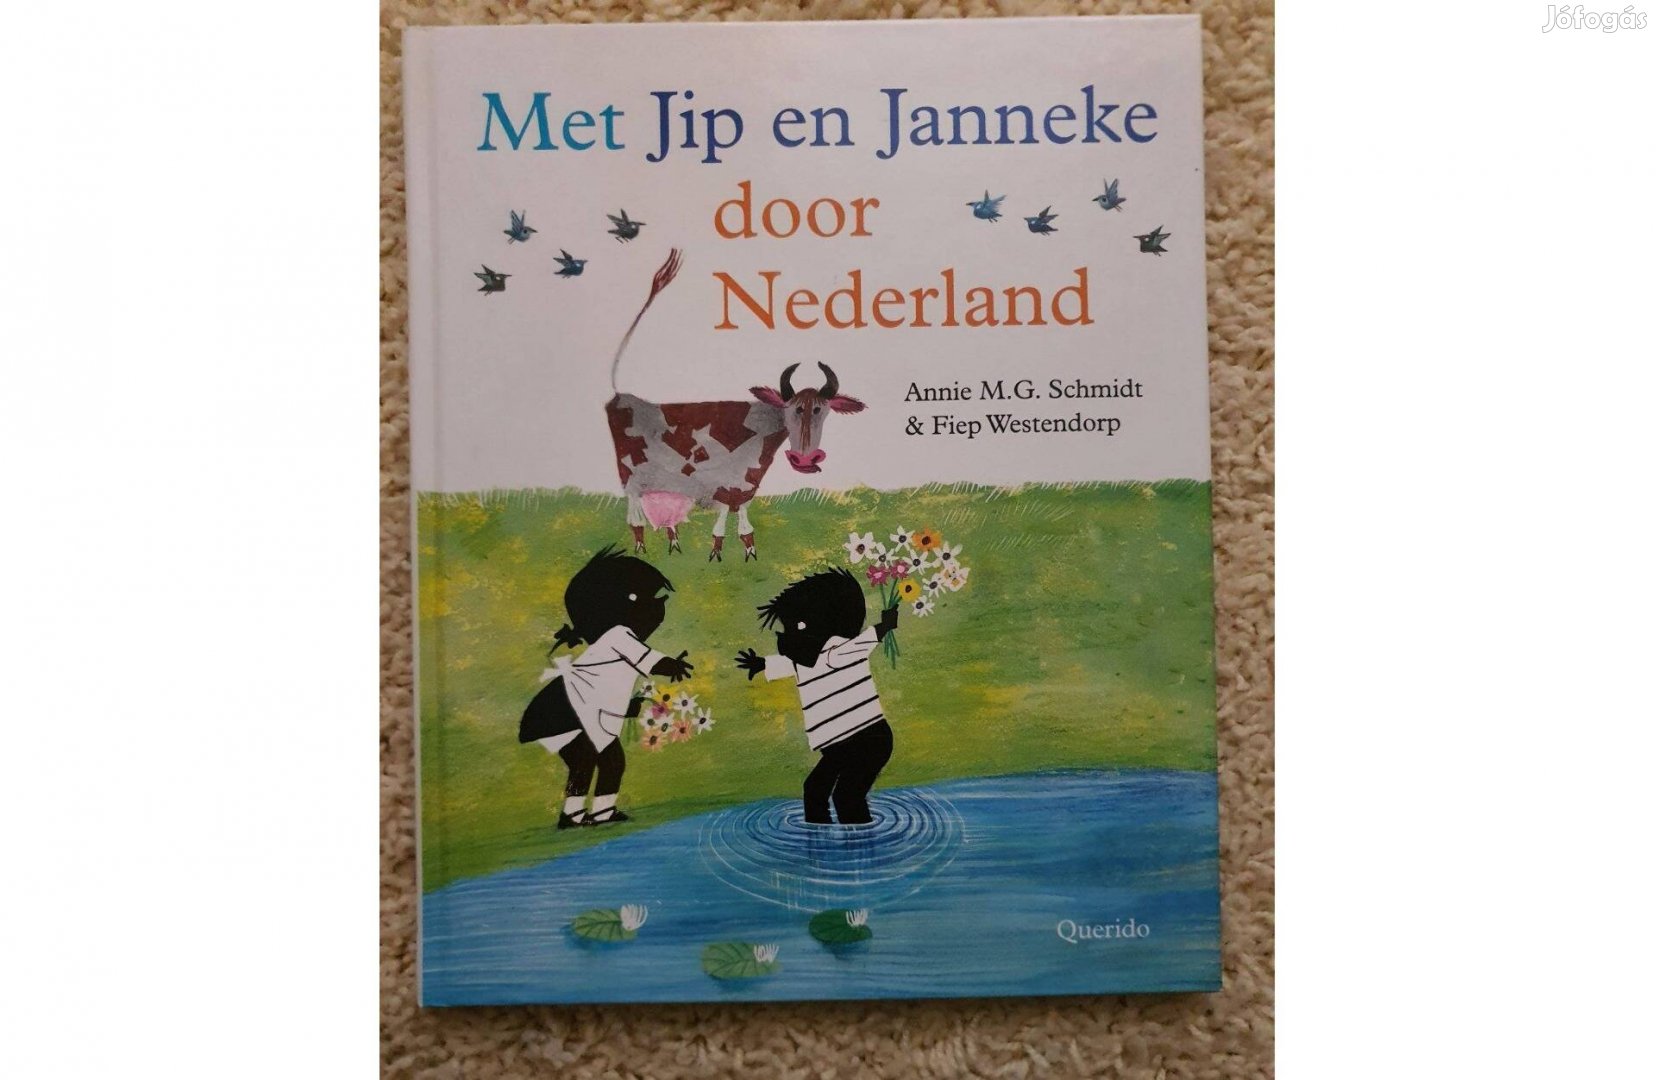 Annie M G Schmidt Met Jip en Janneke door Nederland, holland